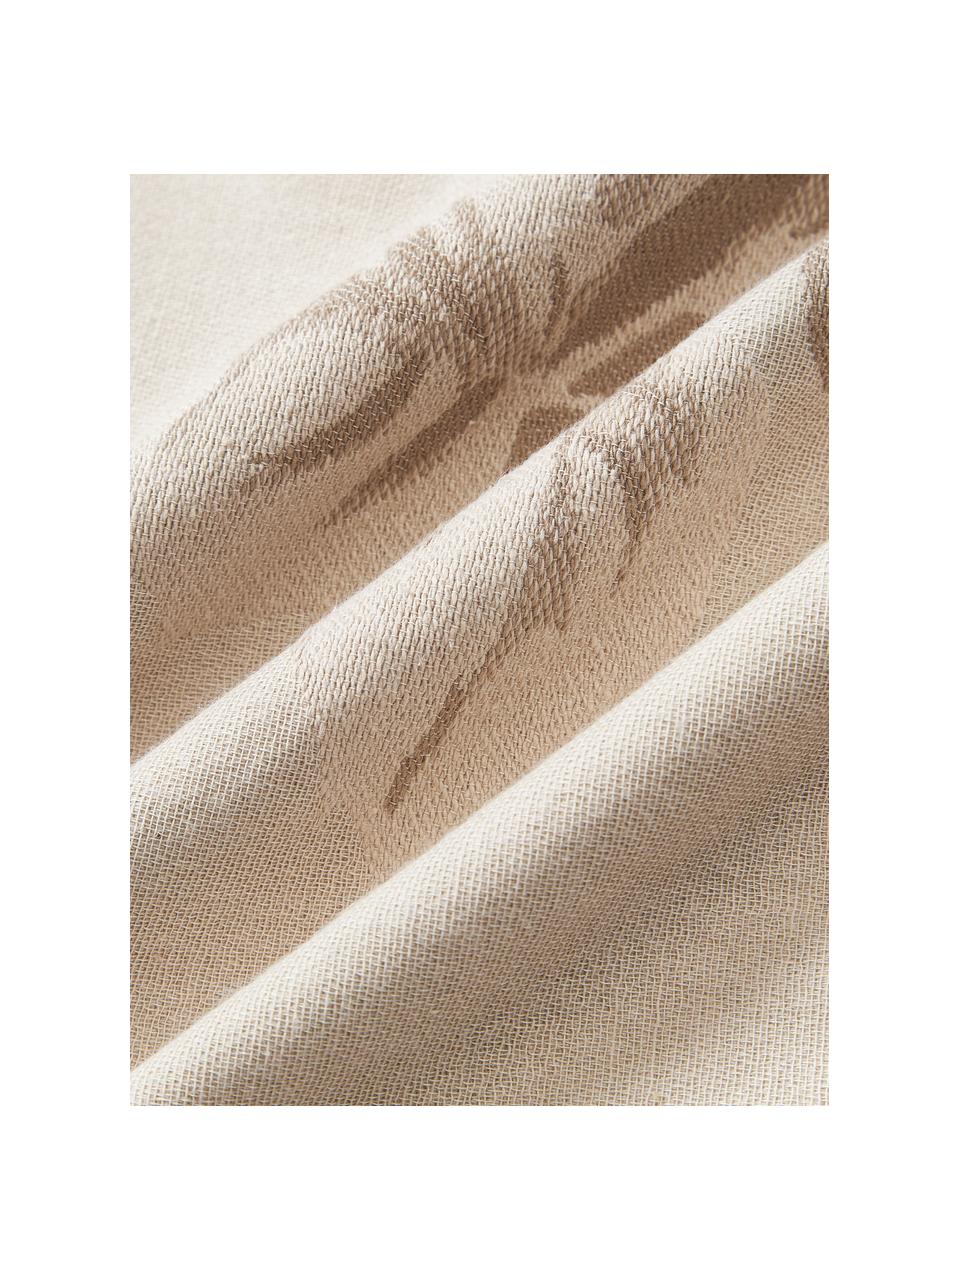 Copricuscino in cotone con motivo jacquard Breight, 100% cotone, Beige chiaro, marrone, Larg. 50 x Lung. 50 cm